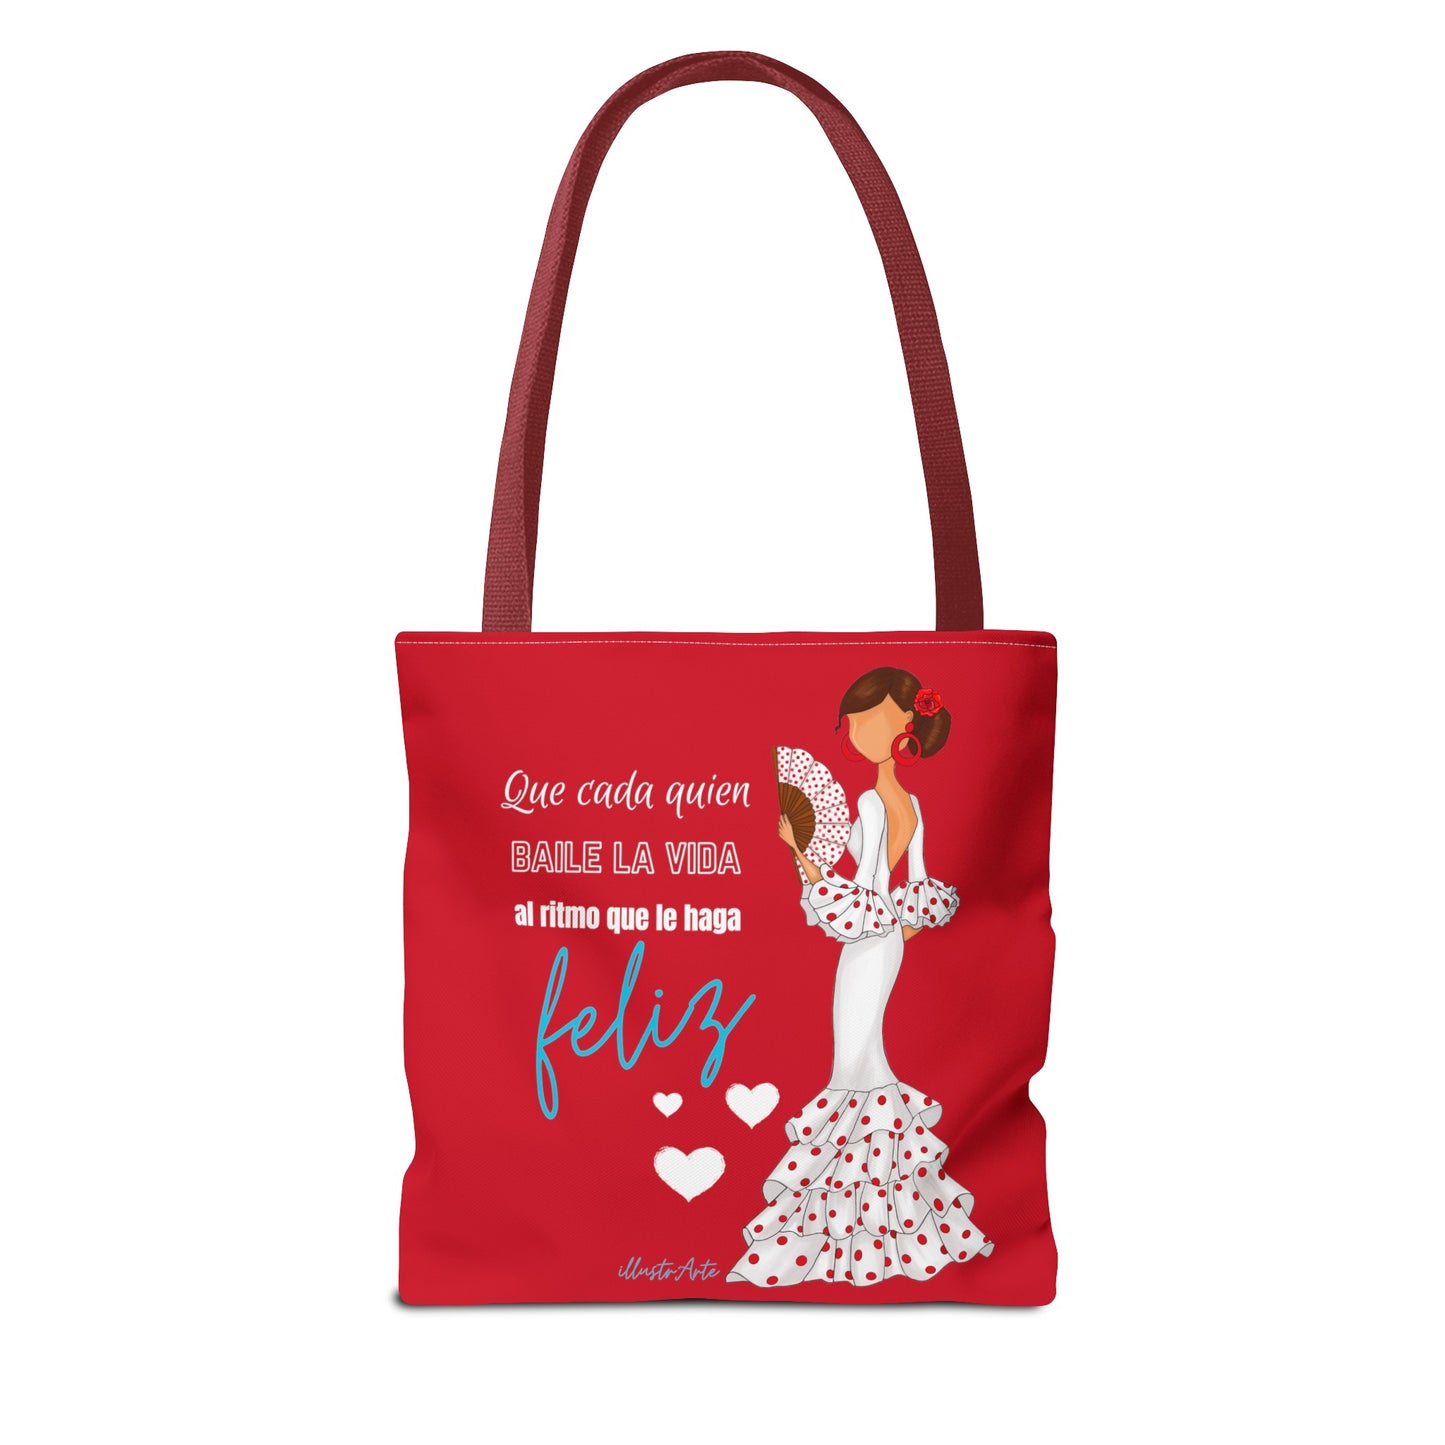 Flamenco Lovers Tote Bag rojo personalizable, Pepa bailaora de flamenco con vestido blanco y frase positiva